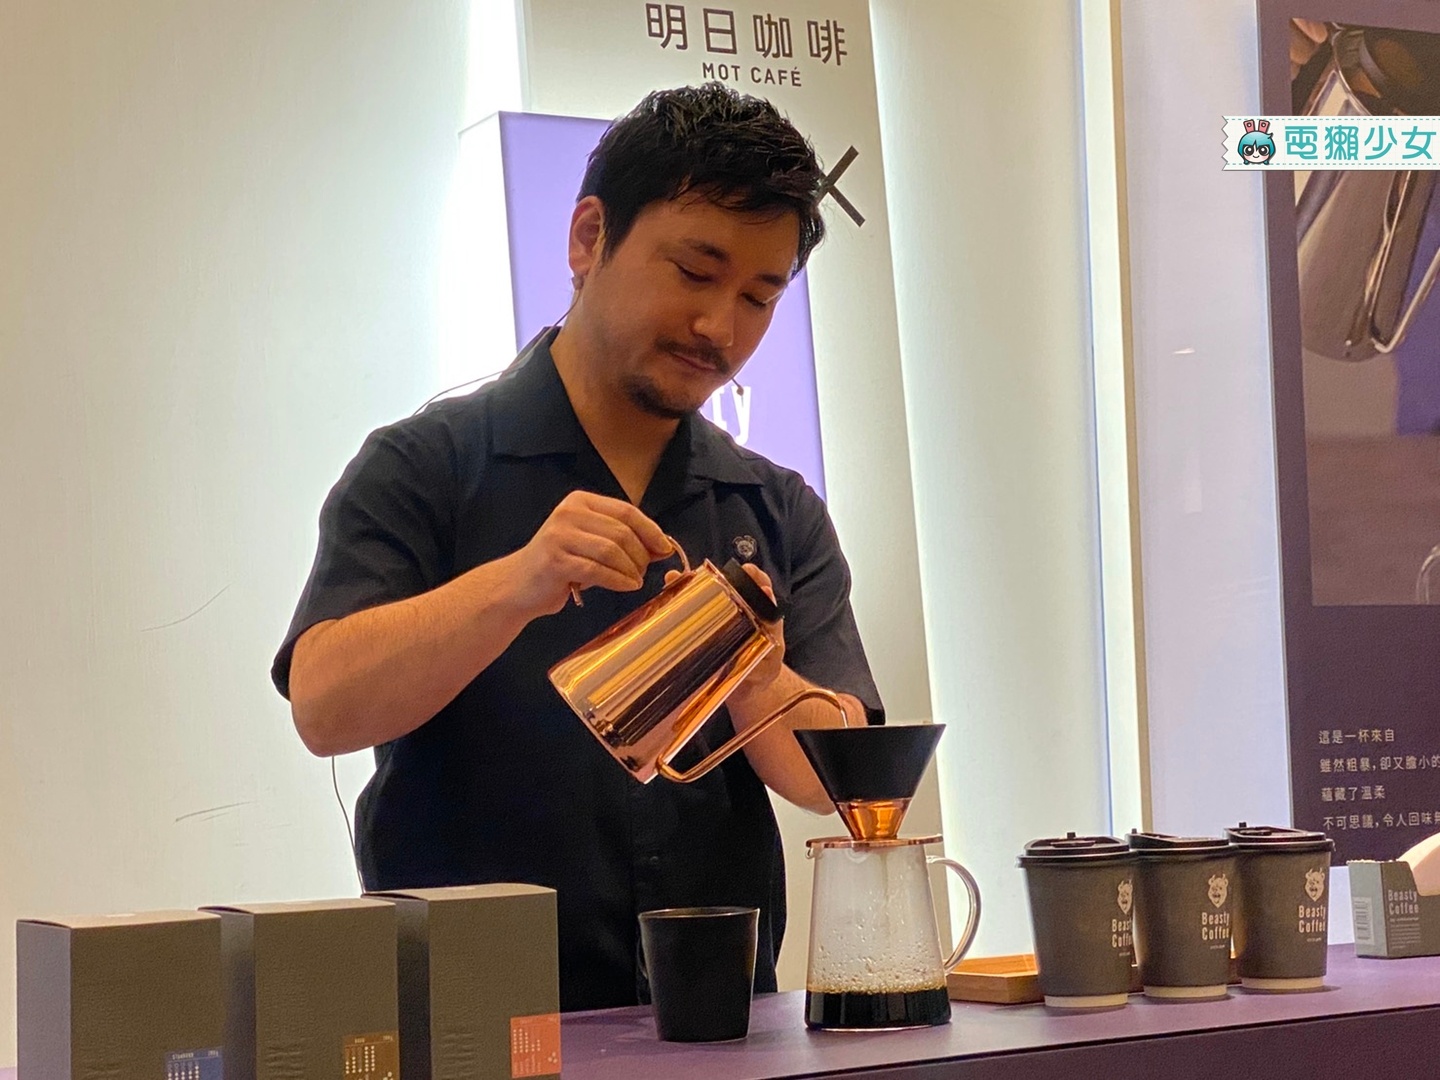 出門｜日系精品家電 amadana 聯手日本頂尖咖啡師打造 Beasty Coffee by amadana 期間限定咖啡廳！